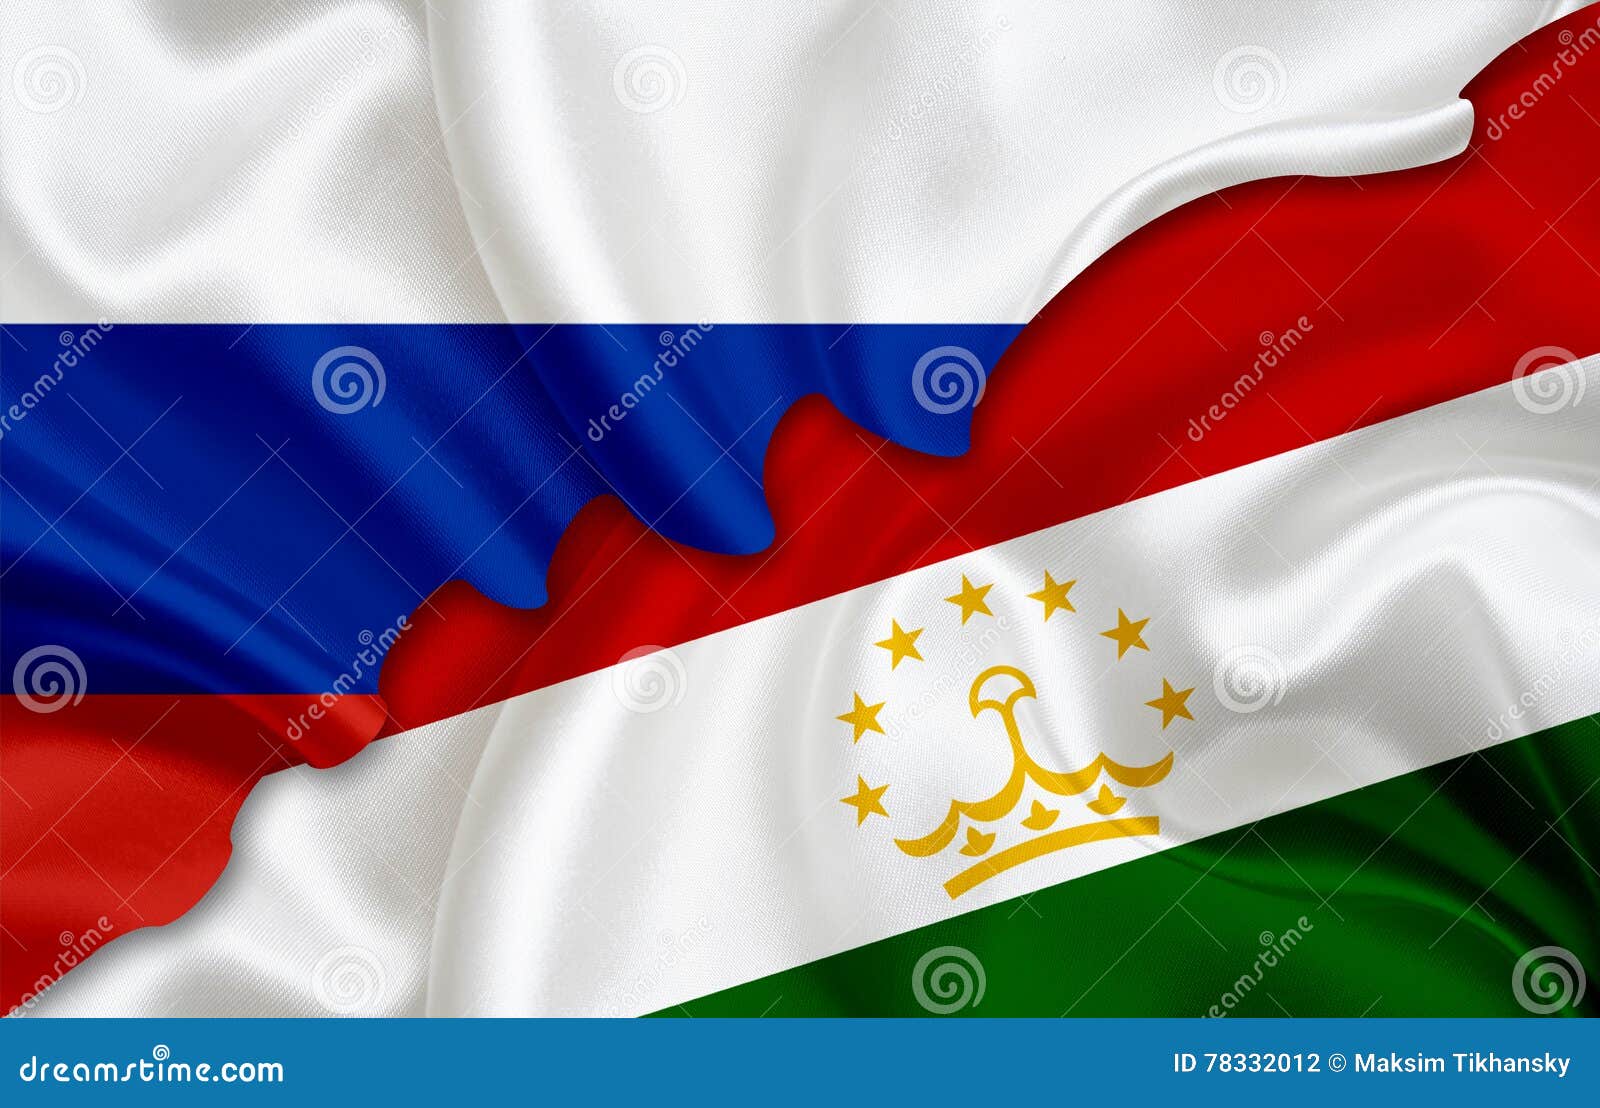 Точикистон россия. Флаг Республики Таджикистан. Флаг России и Таджикистана. Флаг России и Таджикистана вместе. Флаг Таджикистана флаг Таджикистана.